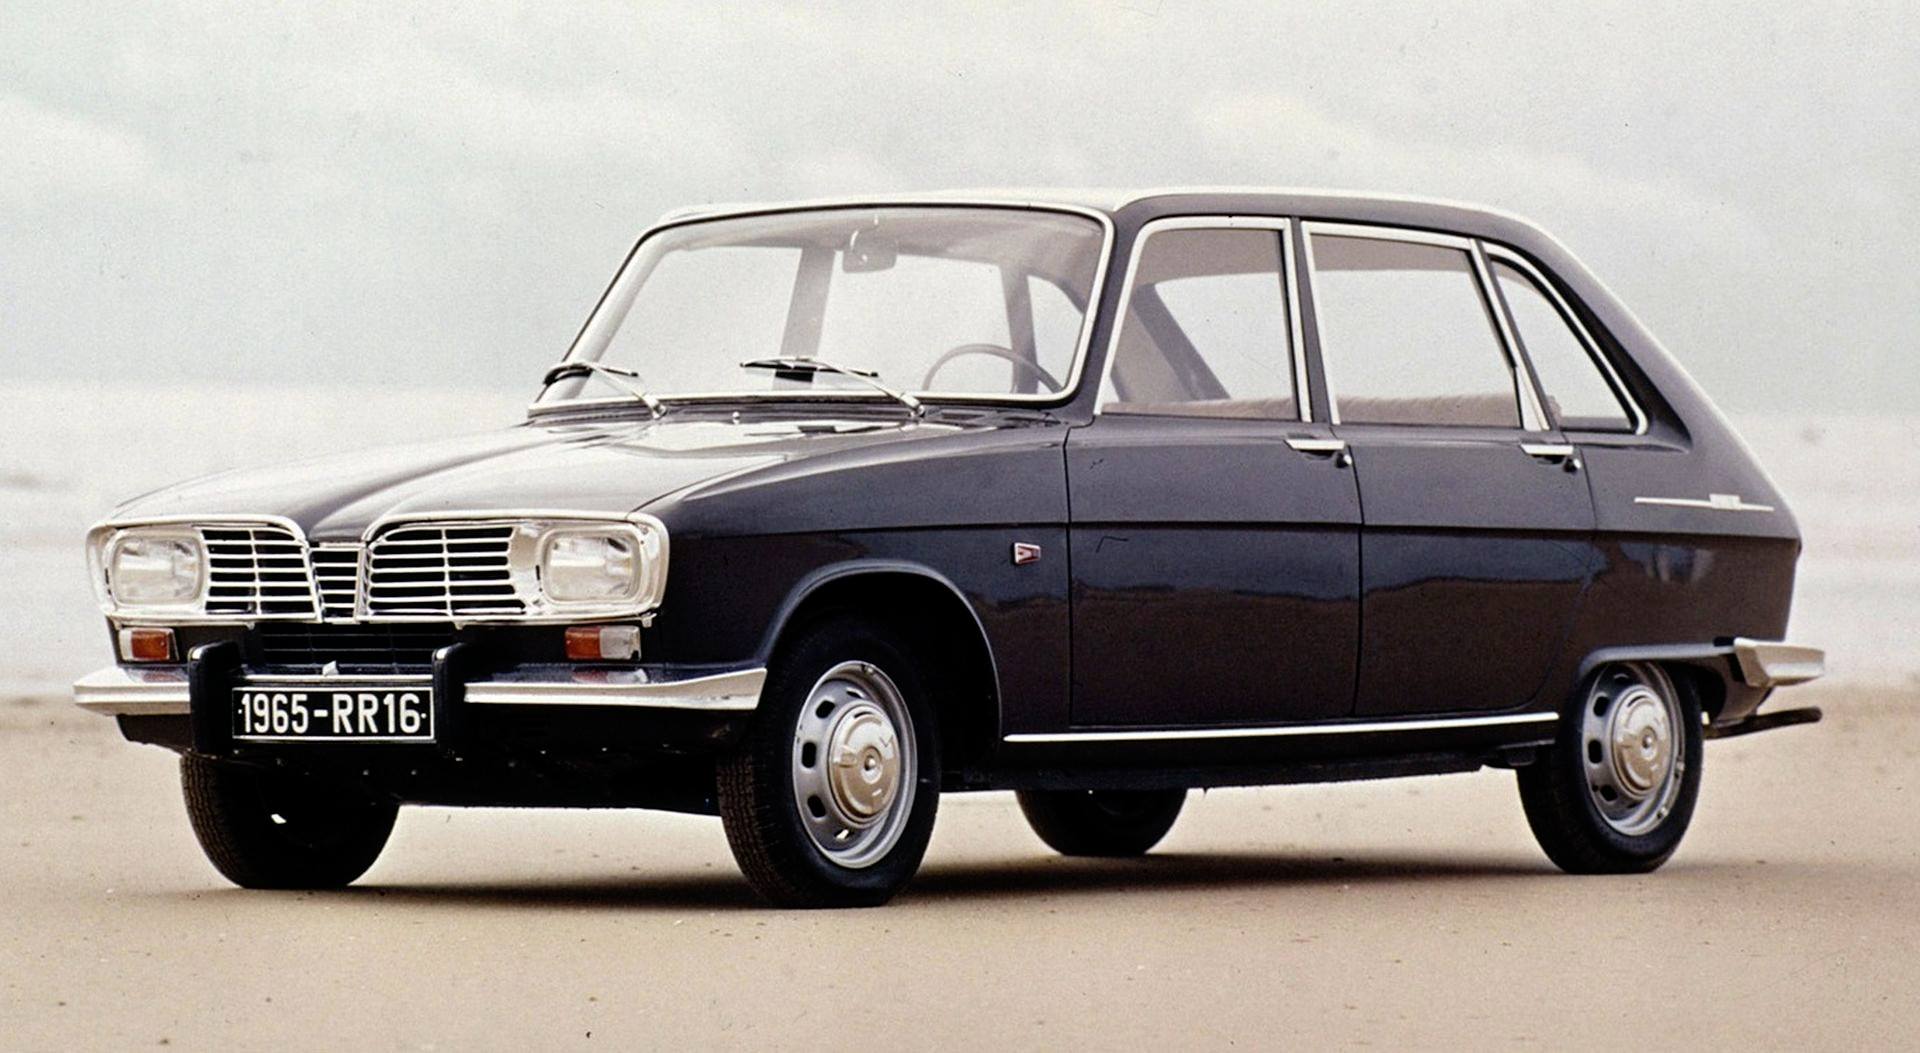 Najciekawsze modele w 120letniej historii marki Renault